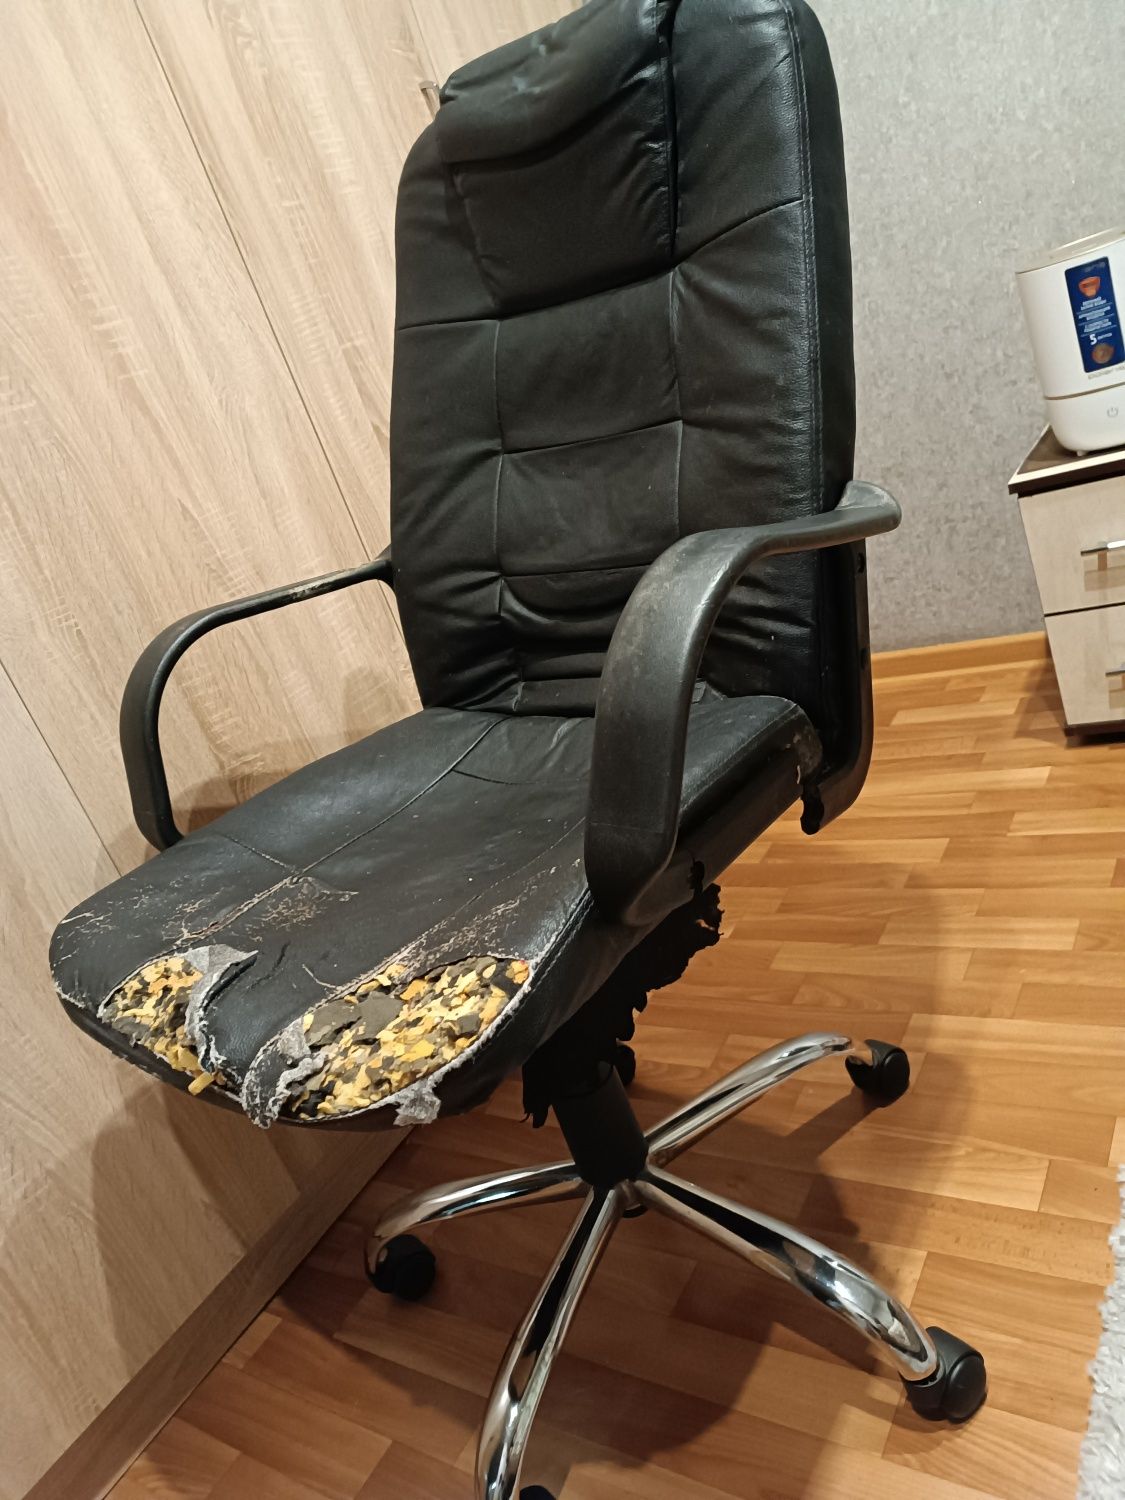 Продам кресло, из вложений: починка ручки и обшивка